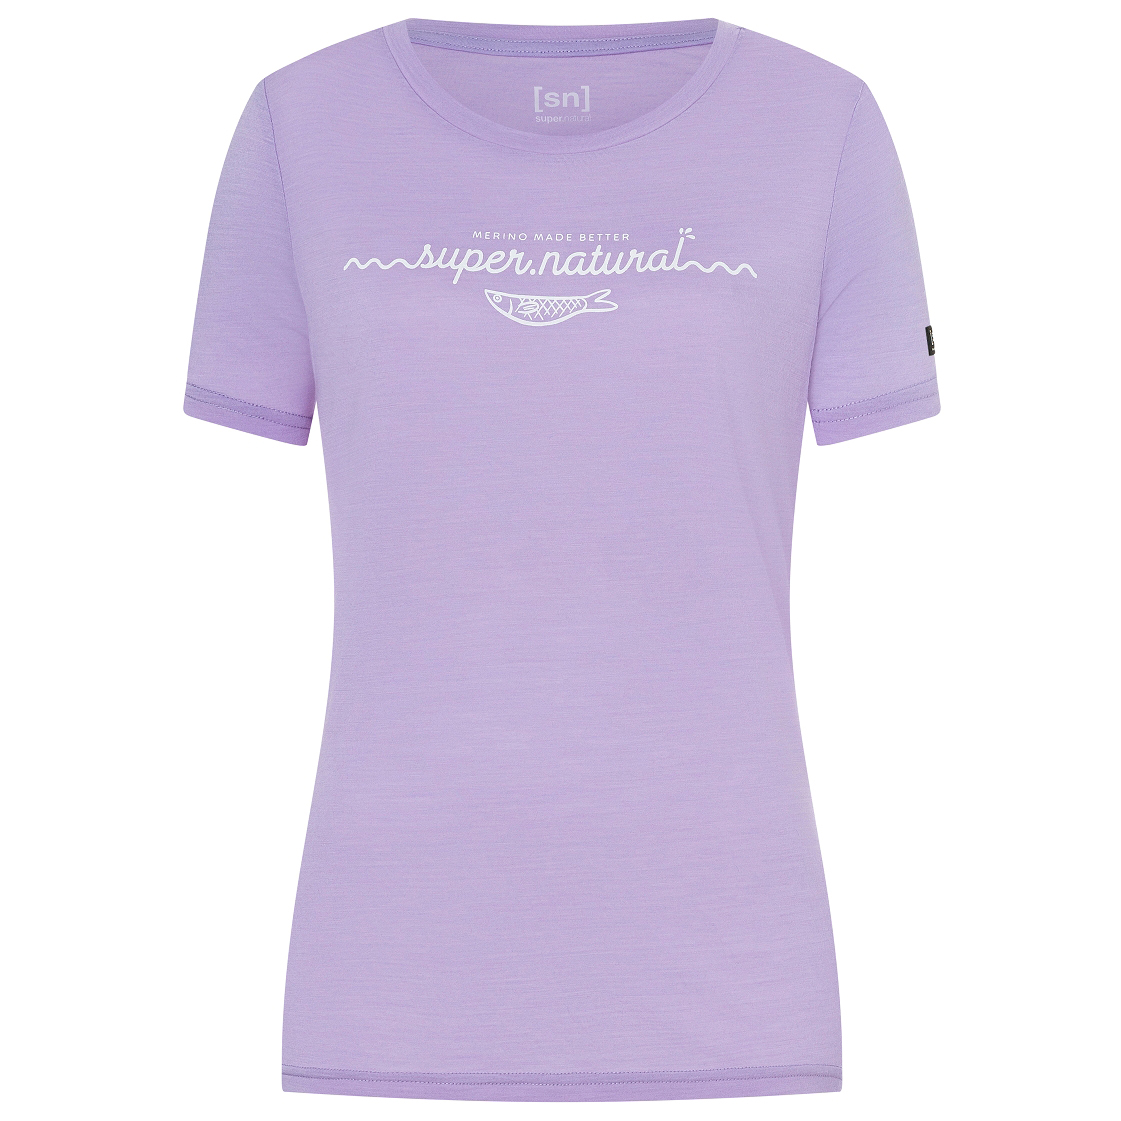 Рубашка из мериноса Super Natural Women's Marina Tee, цвет Lavender/Fresh White